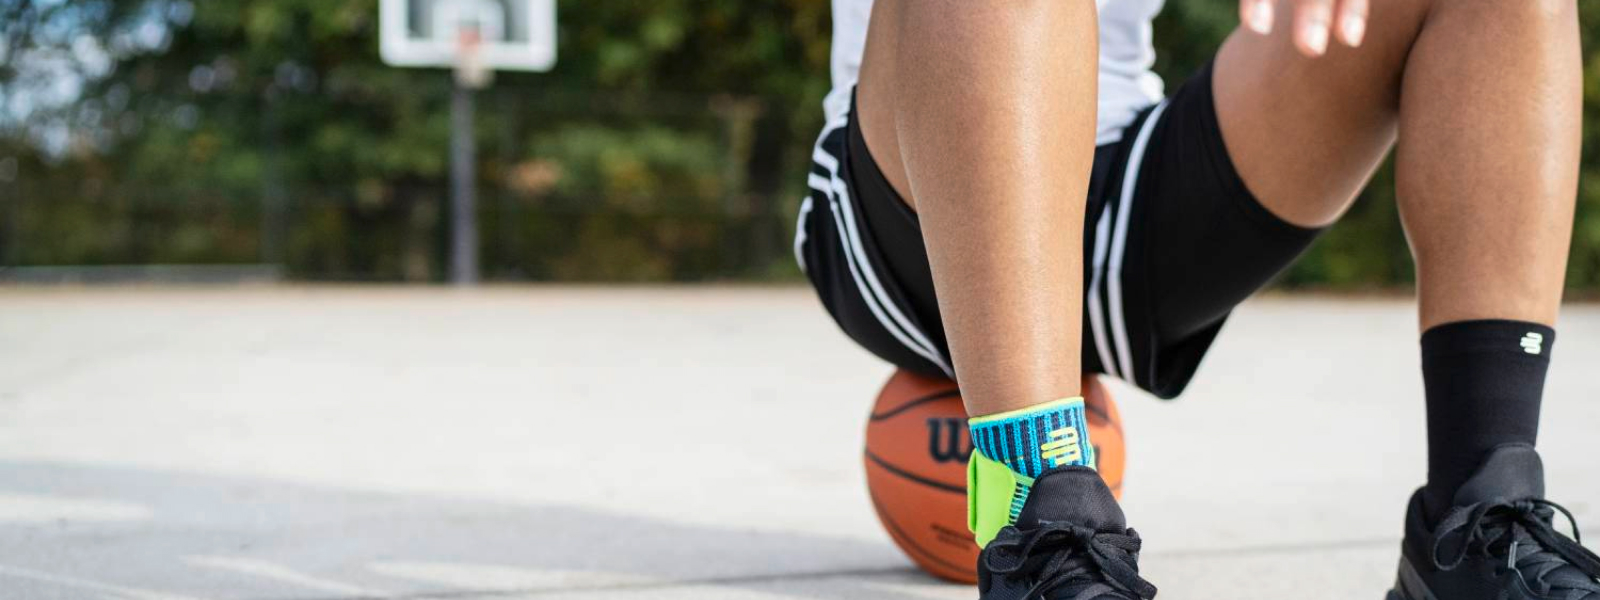 Streetball-Spieler mit Fußbandage sitzt auf einem Basketball auf einem Streetcourt-Feld